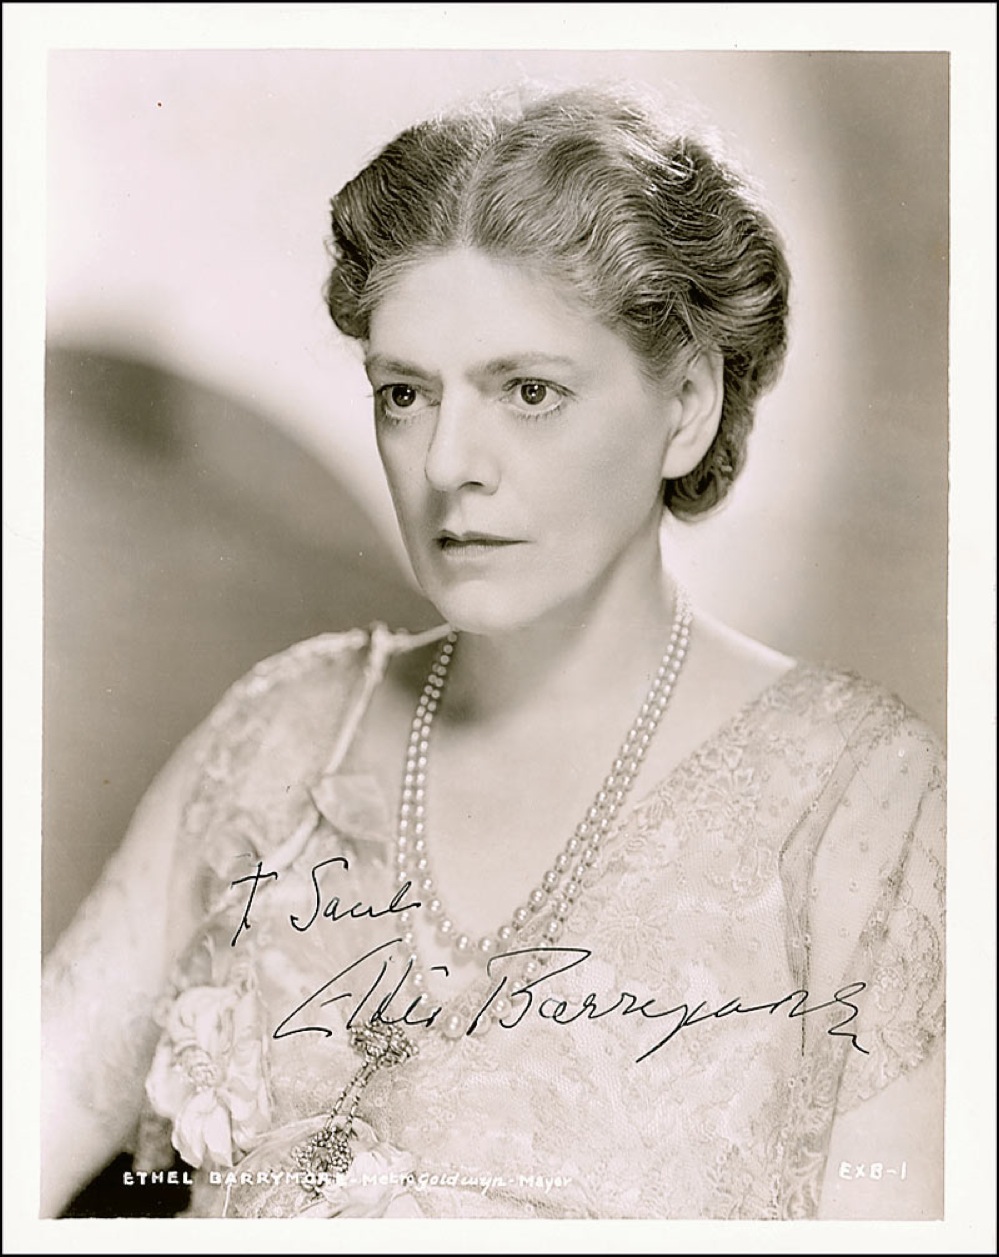 Lot #68 Ethel Barrymore